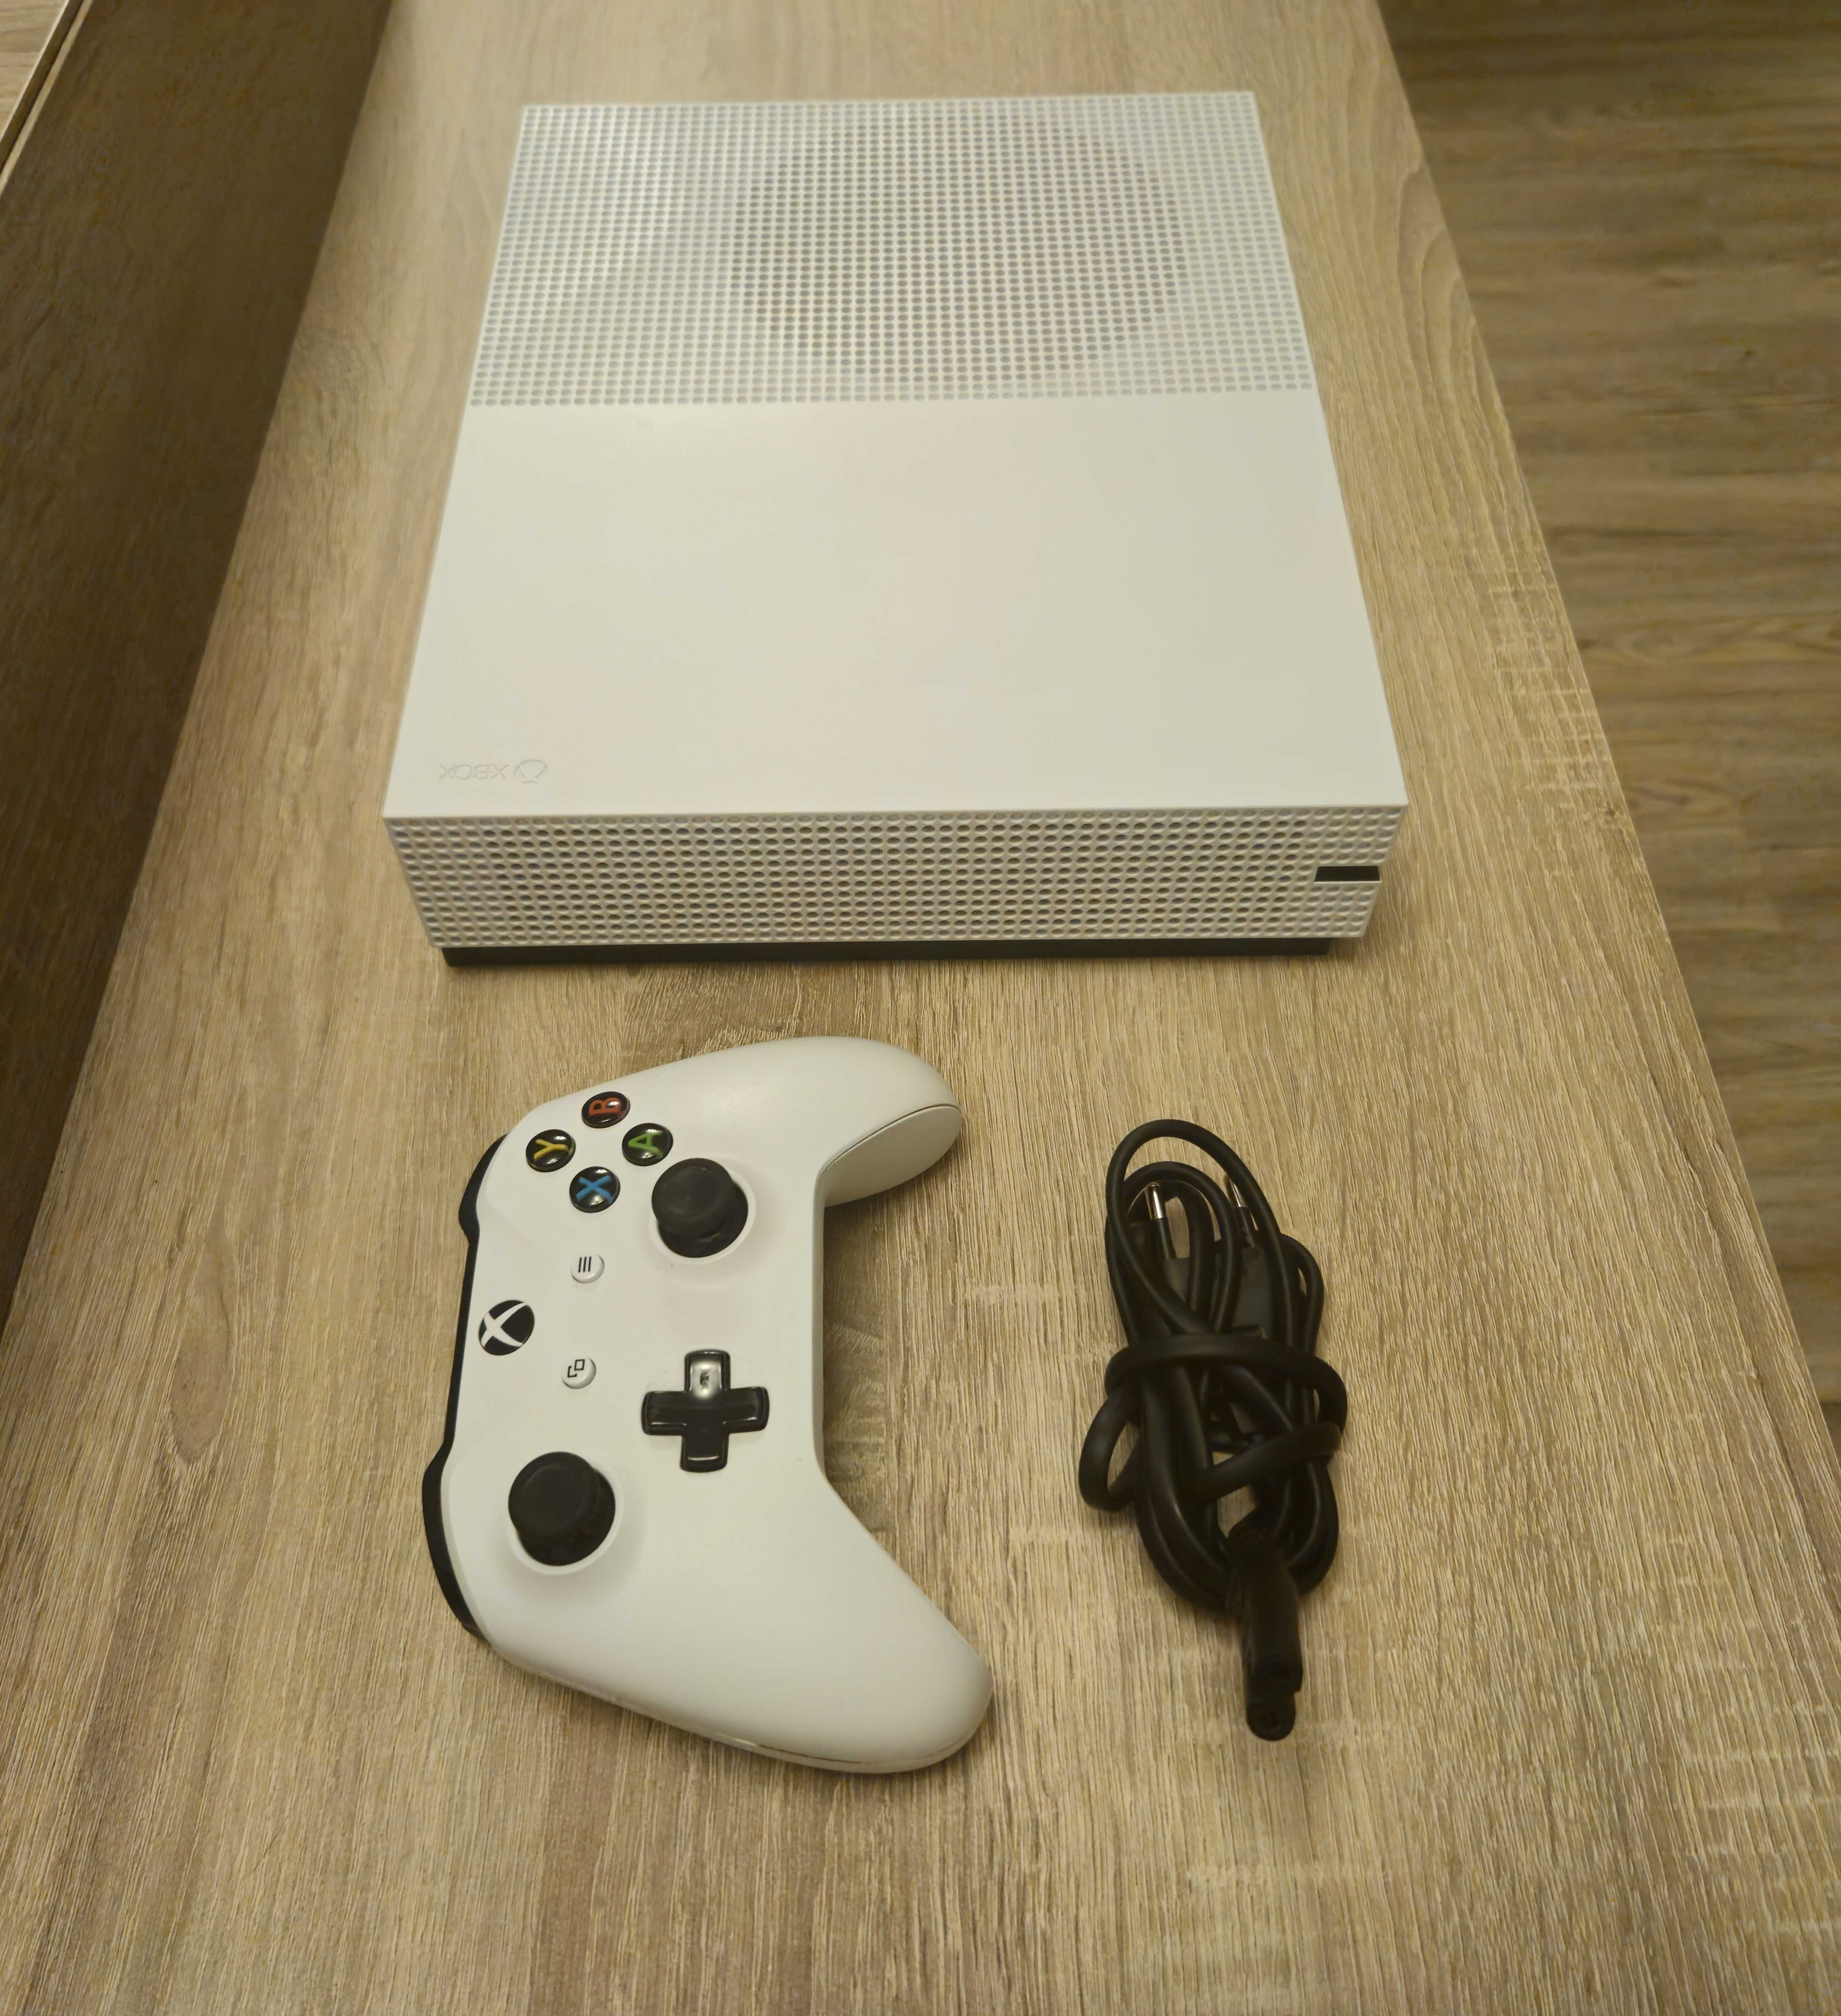 Xbox One S - 1 TB